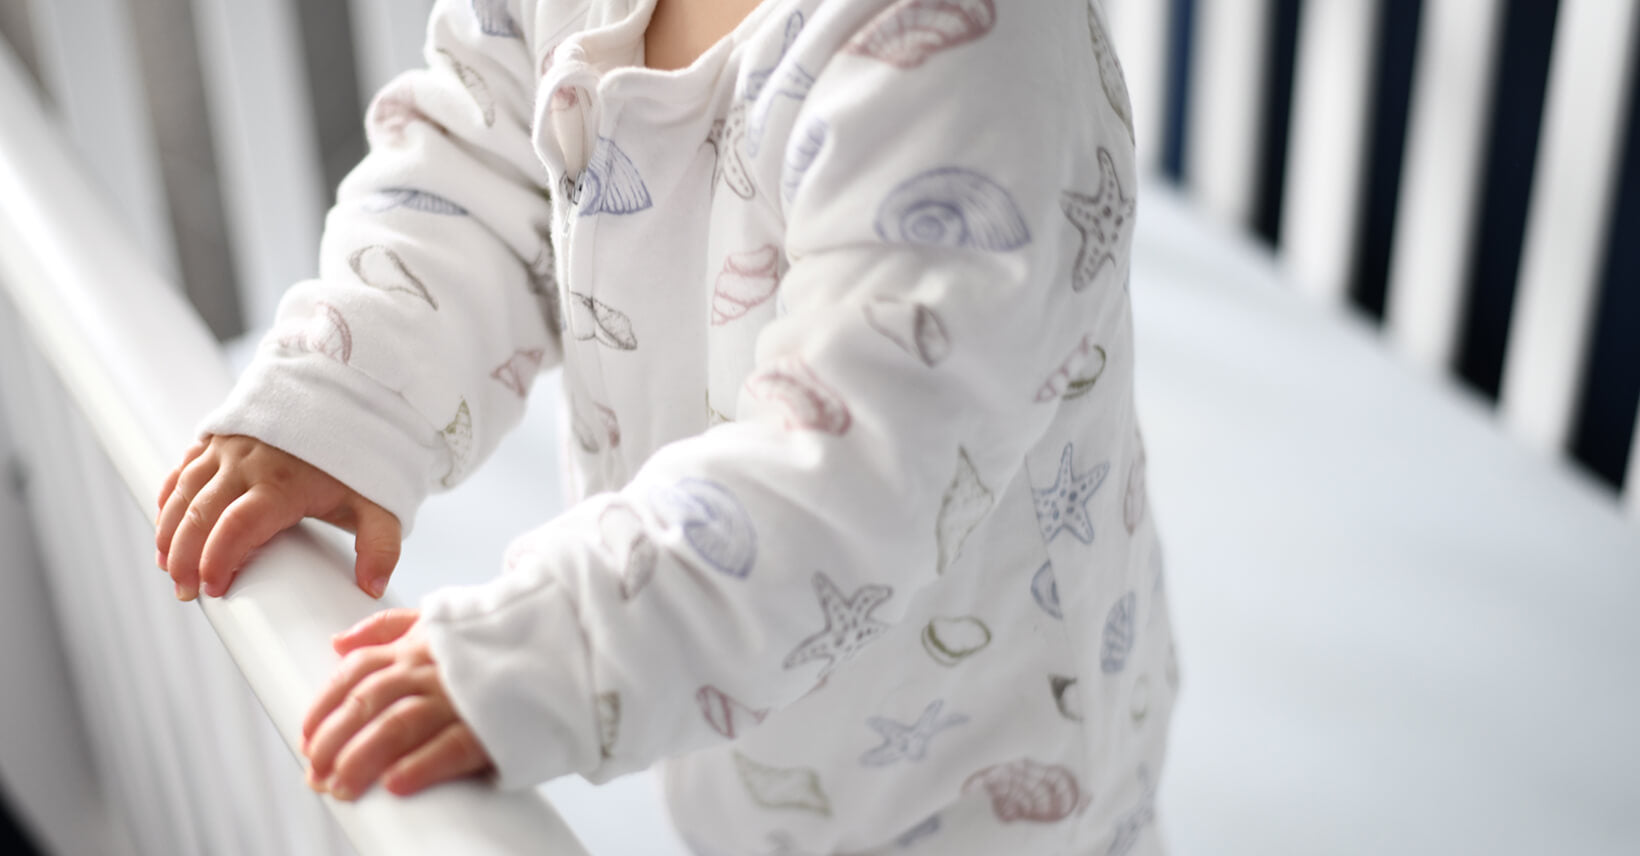 Are Sleep Sacks Safe for Babies?